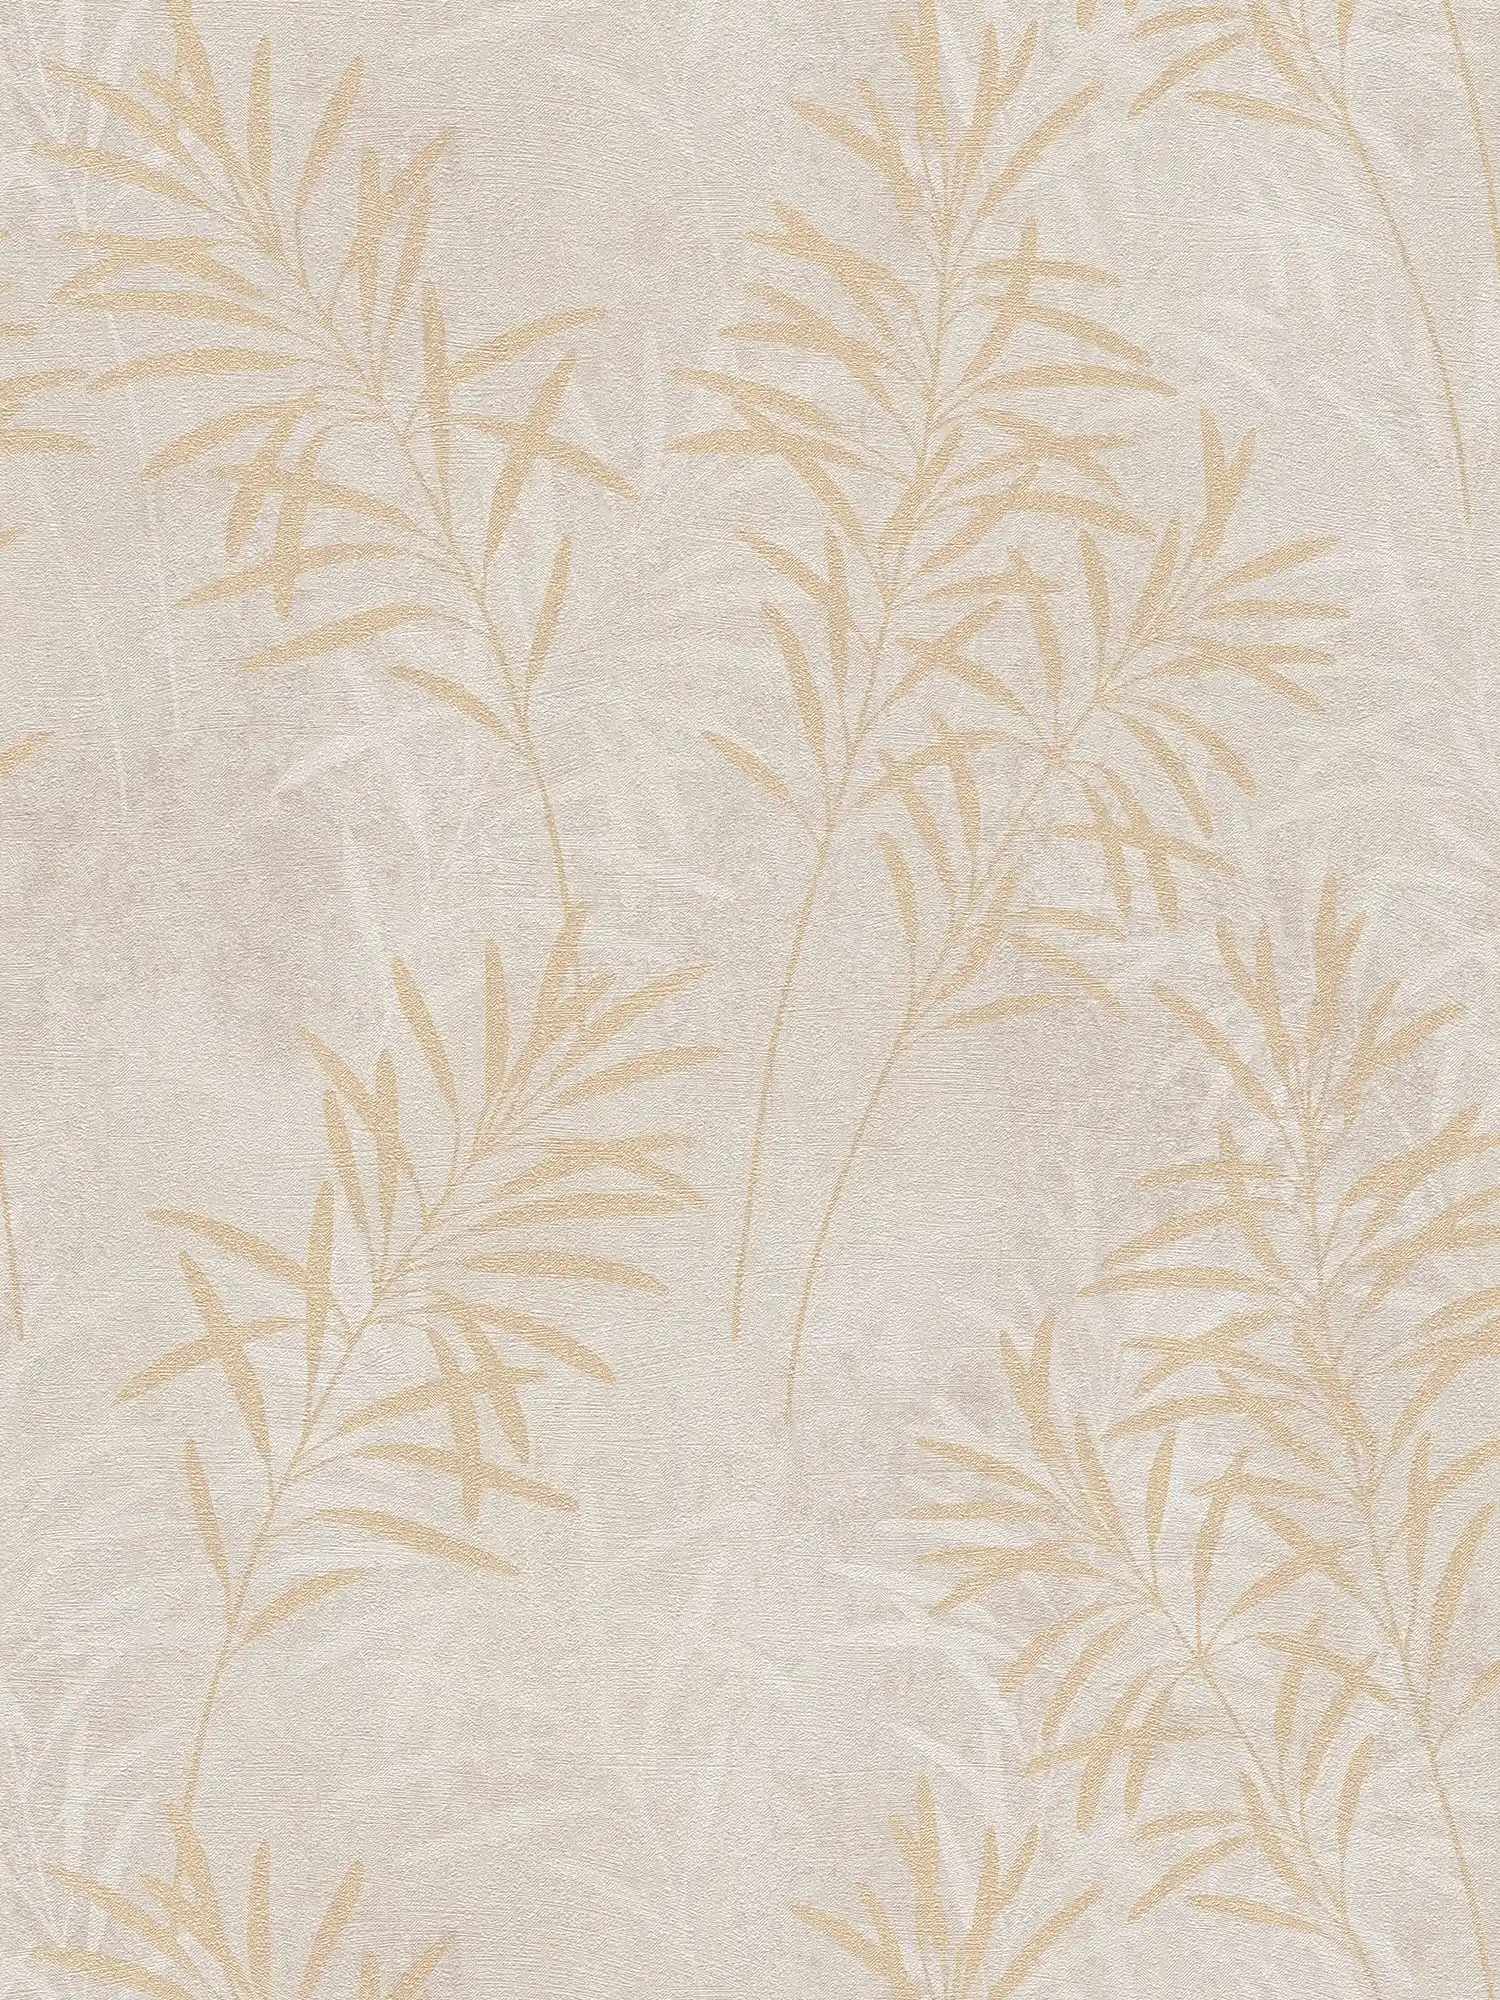 Vliesbehang met bloemen palmboom patroon - crème, grijs, goud
